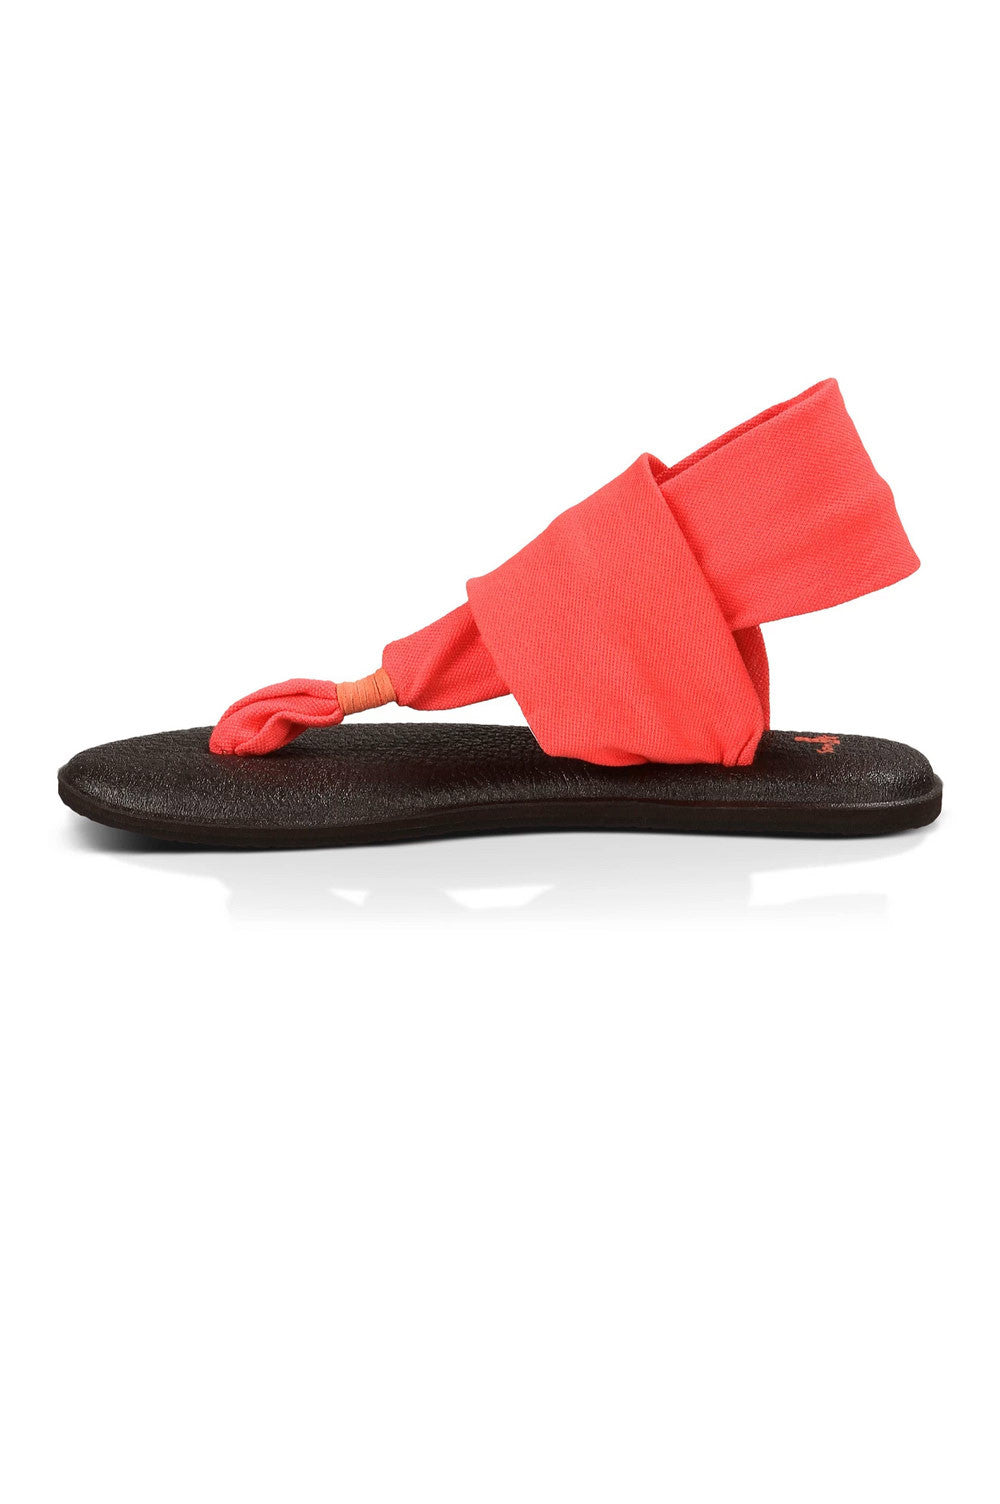 Sanuk Yoga Sling Sandal  Sanuk yoga sling, Sandals, Shop sandals